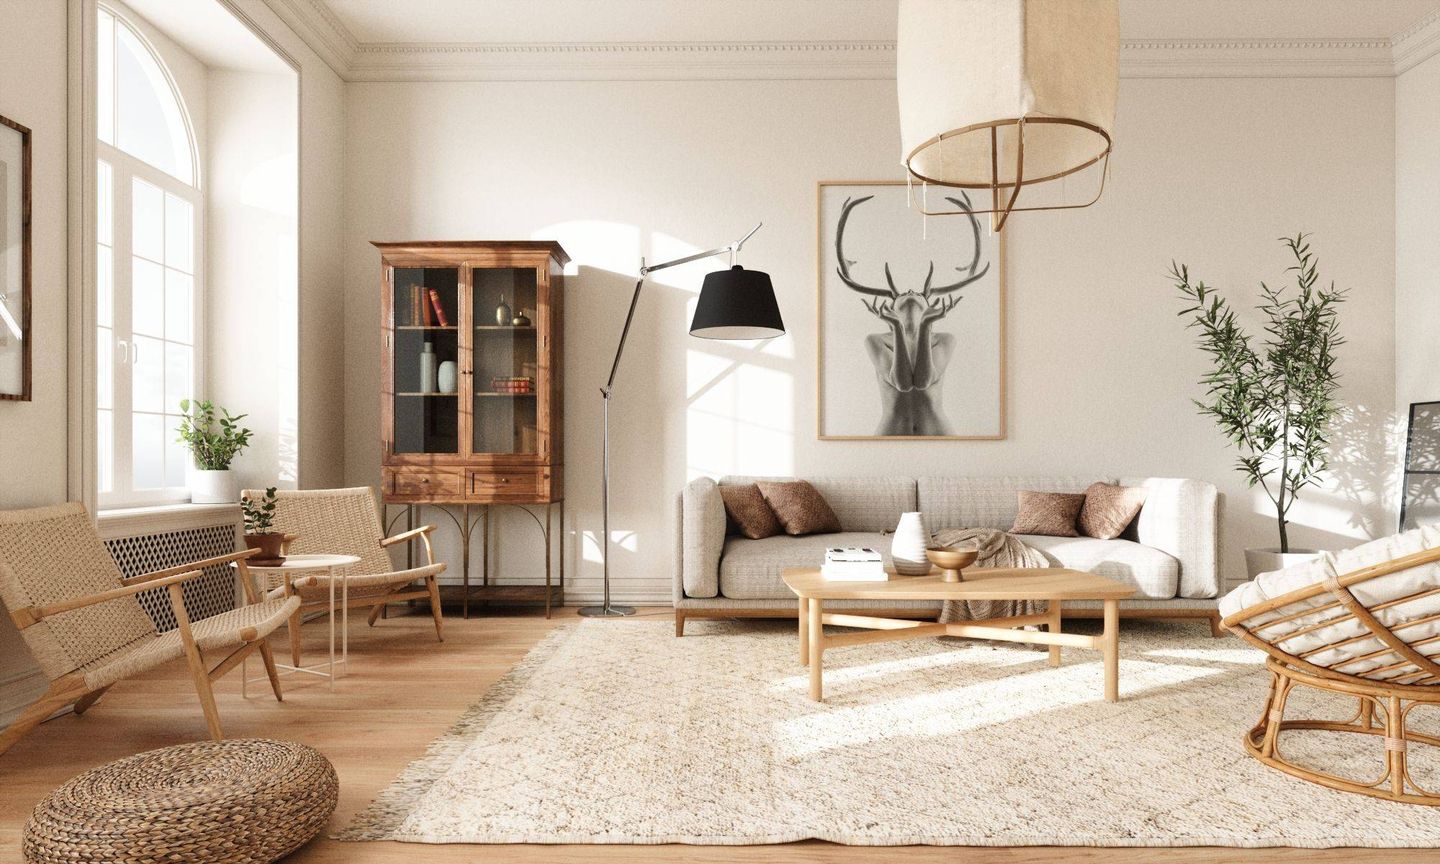 Desain ruang tamu minimalis elegan gaya japandi menggunakan furnitur space-saving dari kayu.